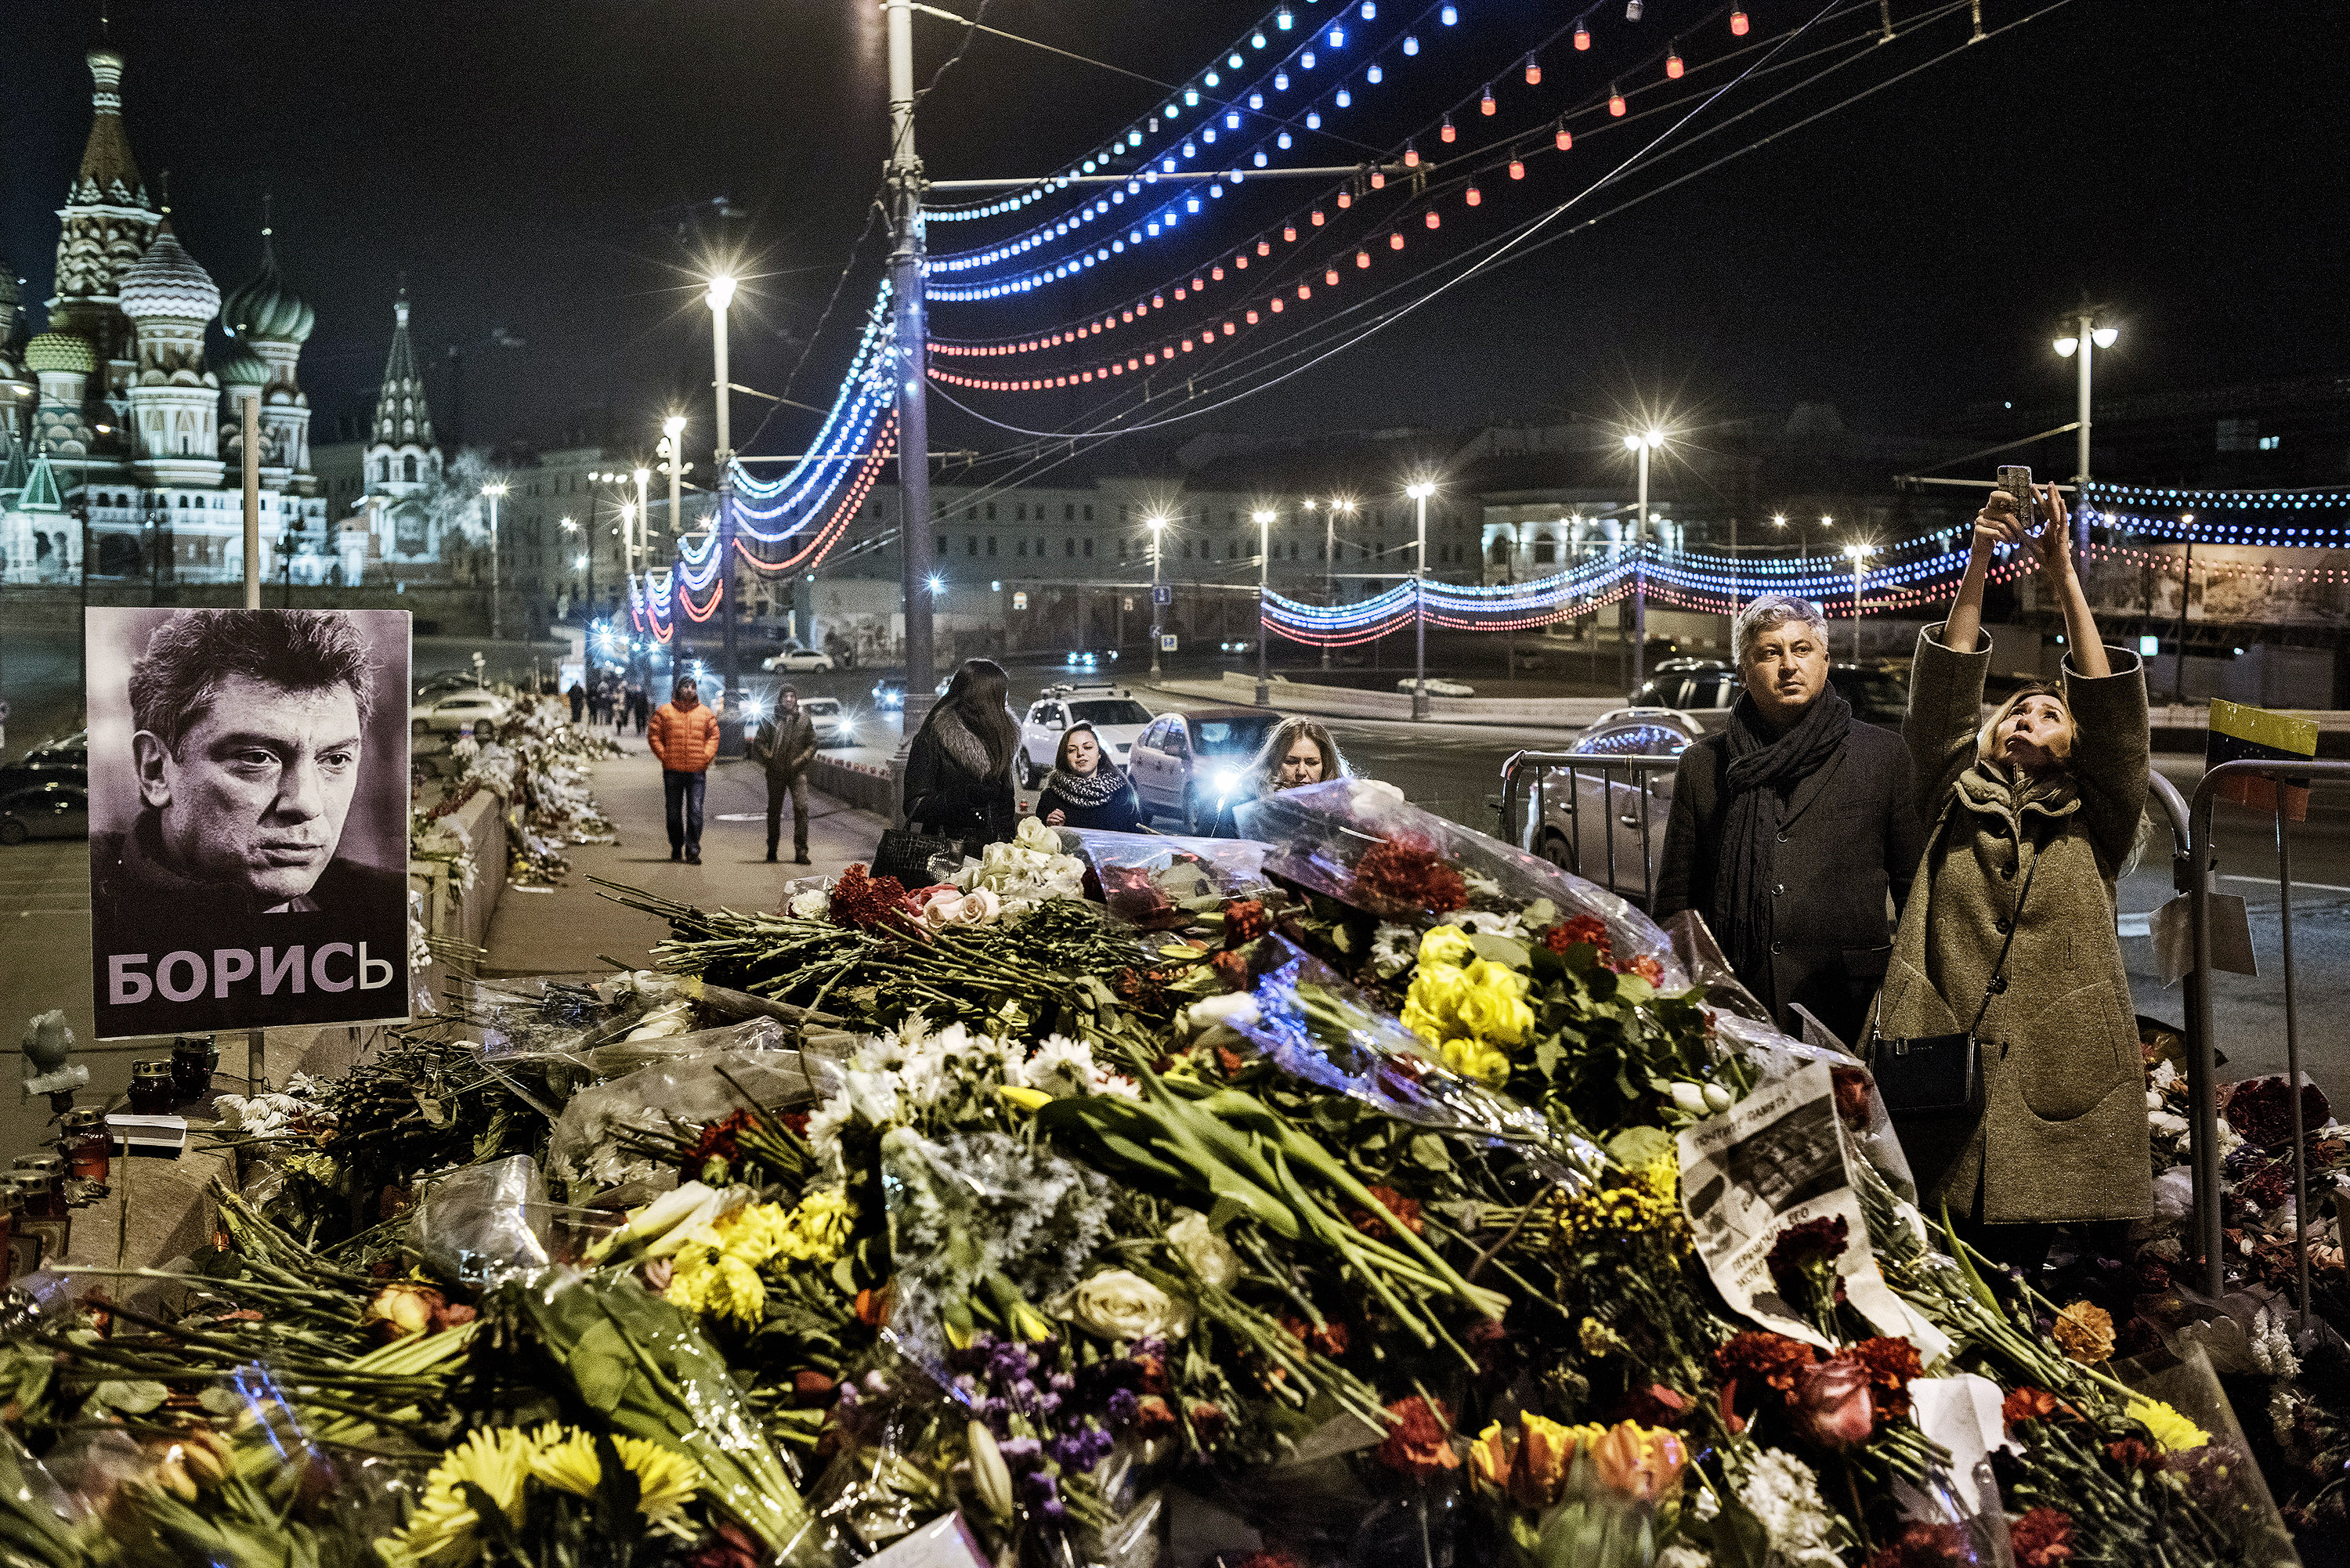 Passersby stop at the spot where opposition leader Boris Nemtsov was murdered. (Yuri Kozyrev—NOOR for TIME)